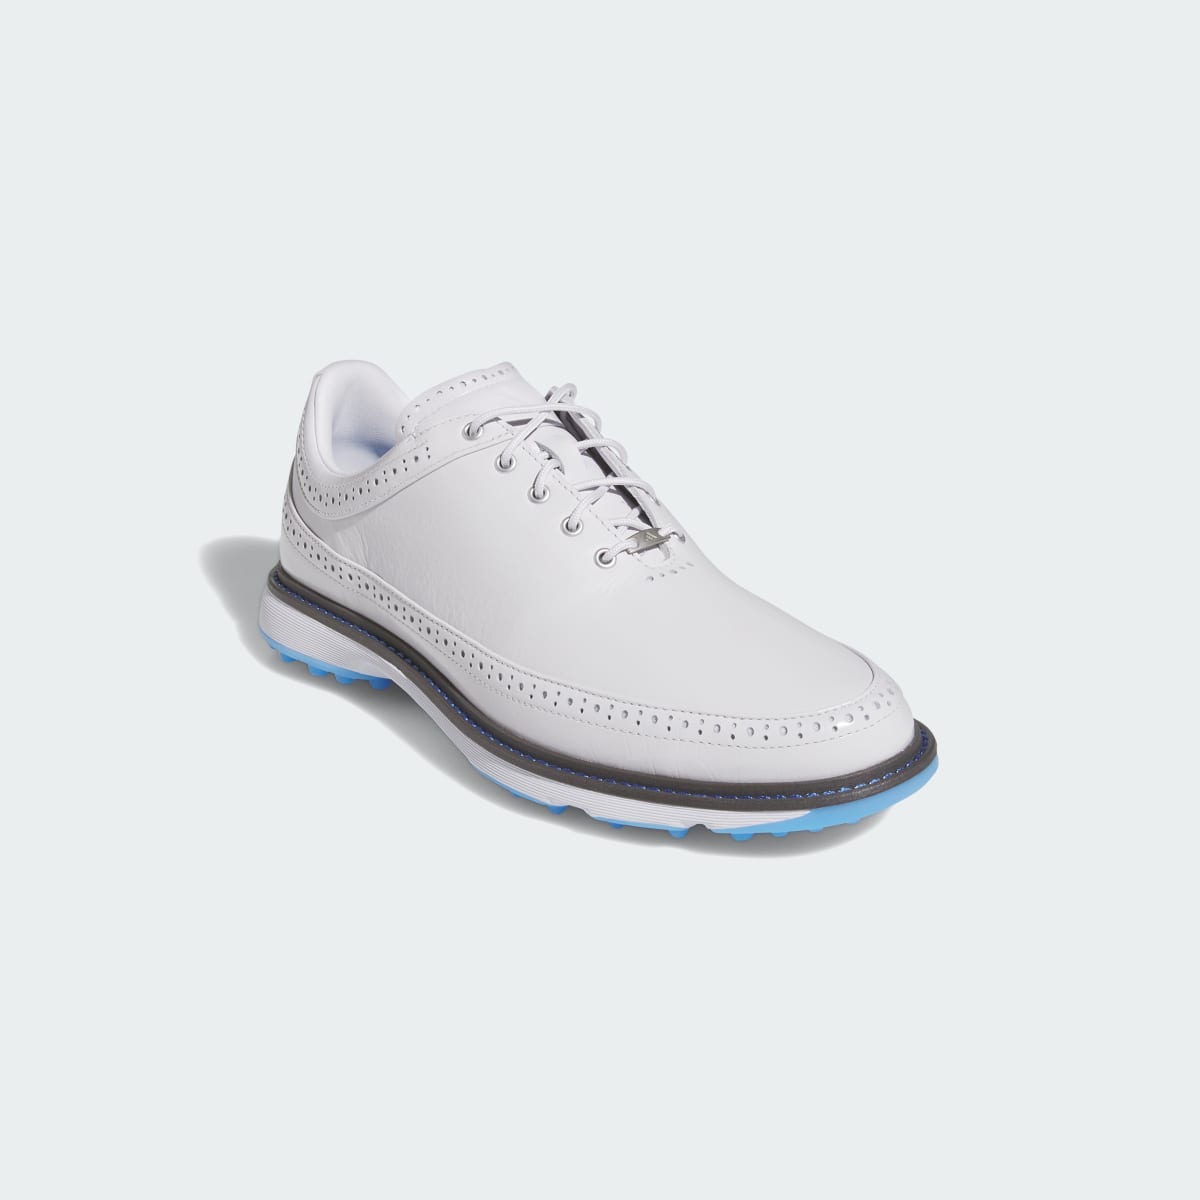 Adidas Modern Classic 80 Spikeless Golf Shoes. 5